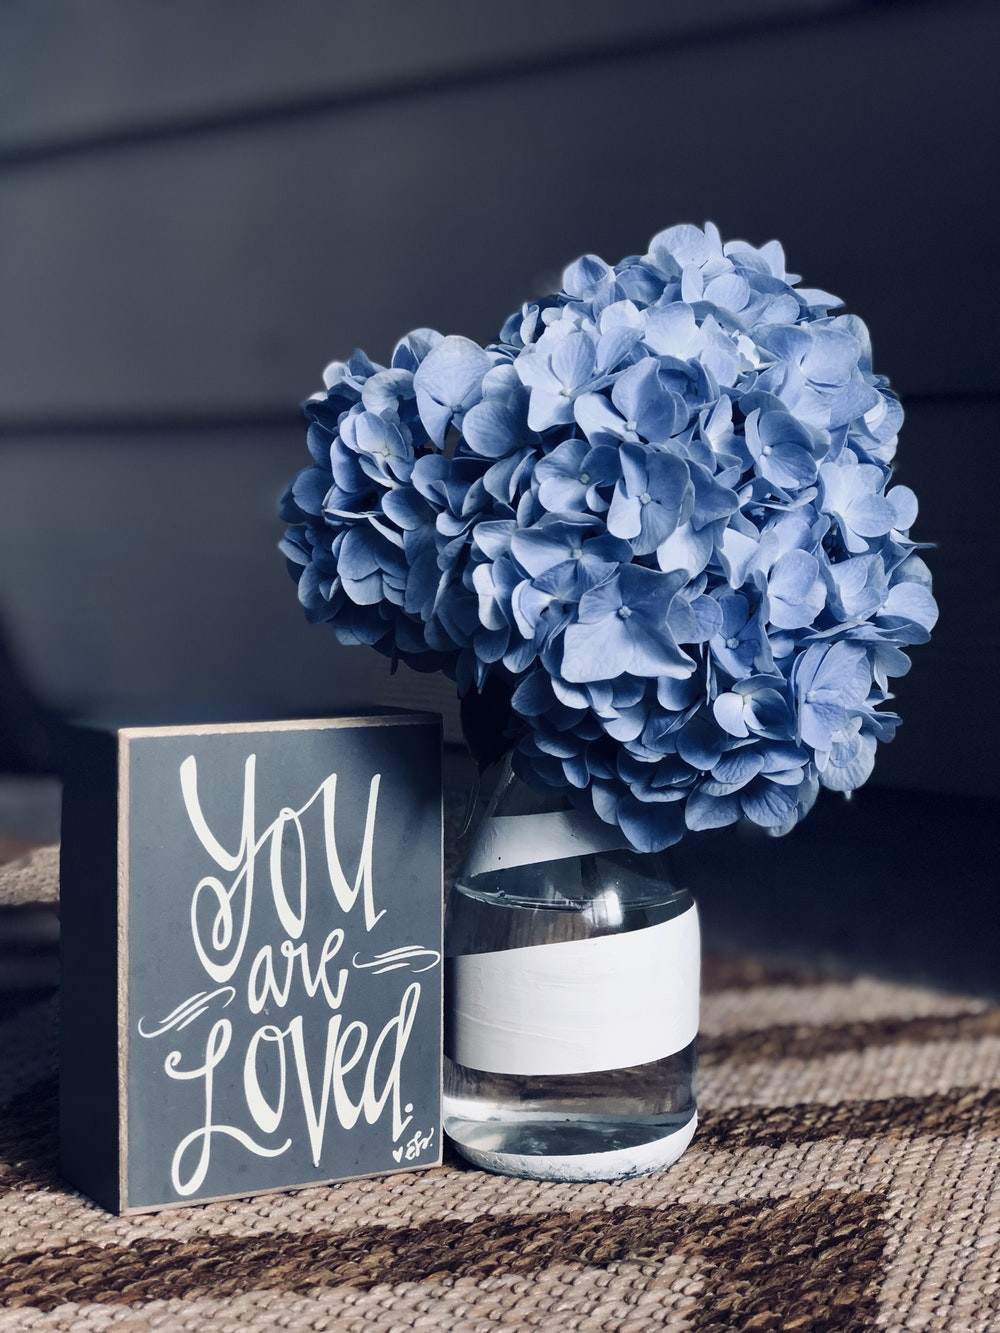 30 Lovable Blue Vase Book Exchange 2024 free download blue vase book exchange of 100 gift pictures hd download free images on unsplash inside blue flowers in glass vase